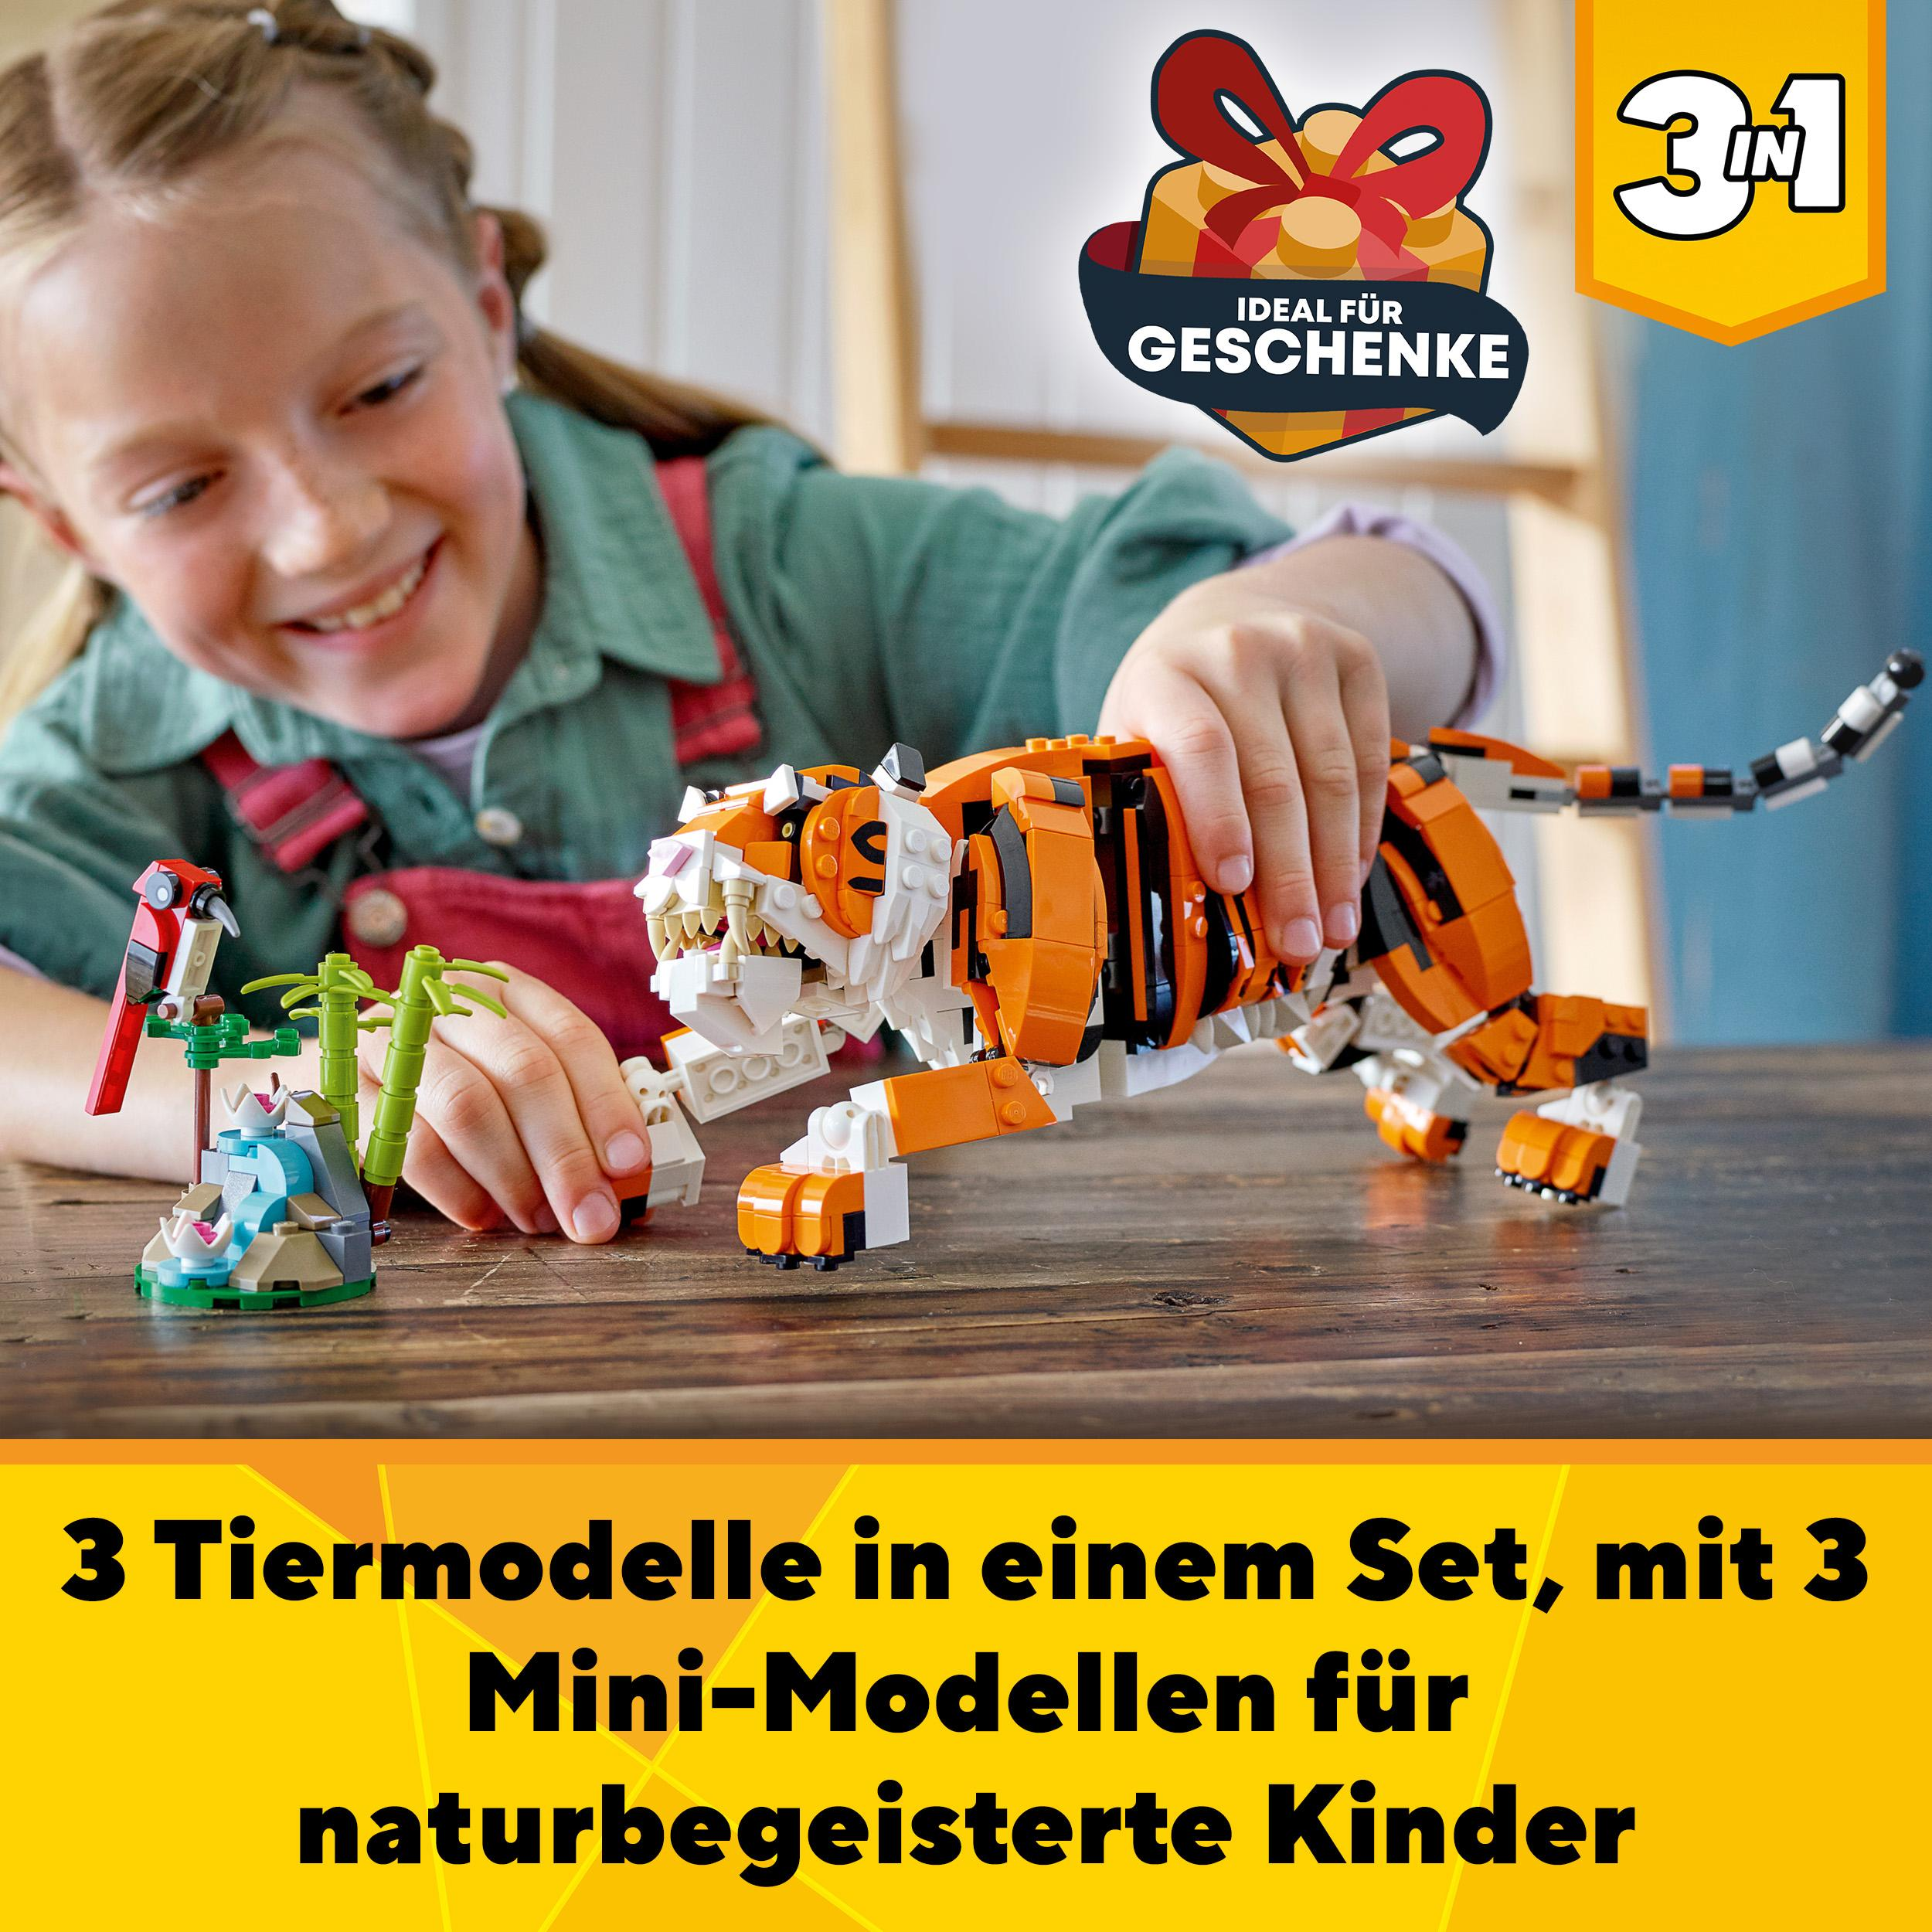 LEGO Creator 31129 Tiger Majestätischer Mehrfarbig Bausatz